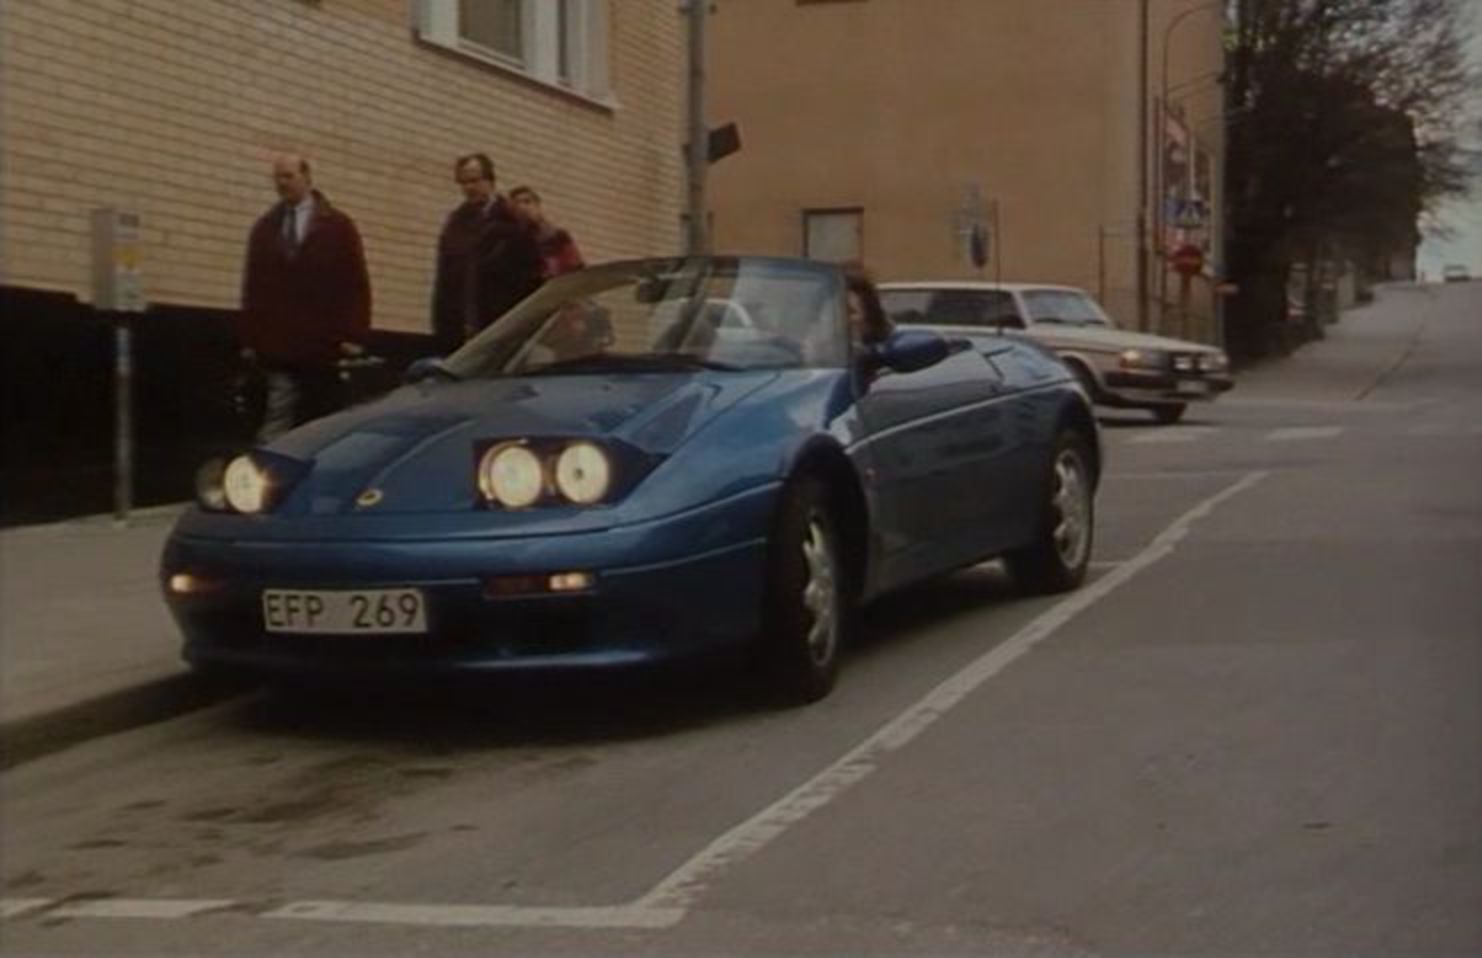 IMCDb.org: 1991 Lotus Elan Turbo [Type M100] in "Snoken, 1993-